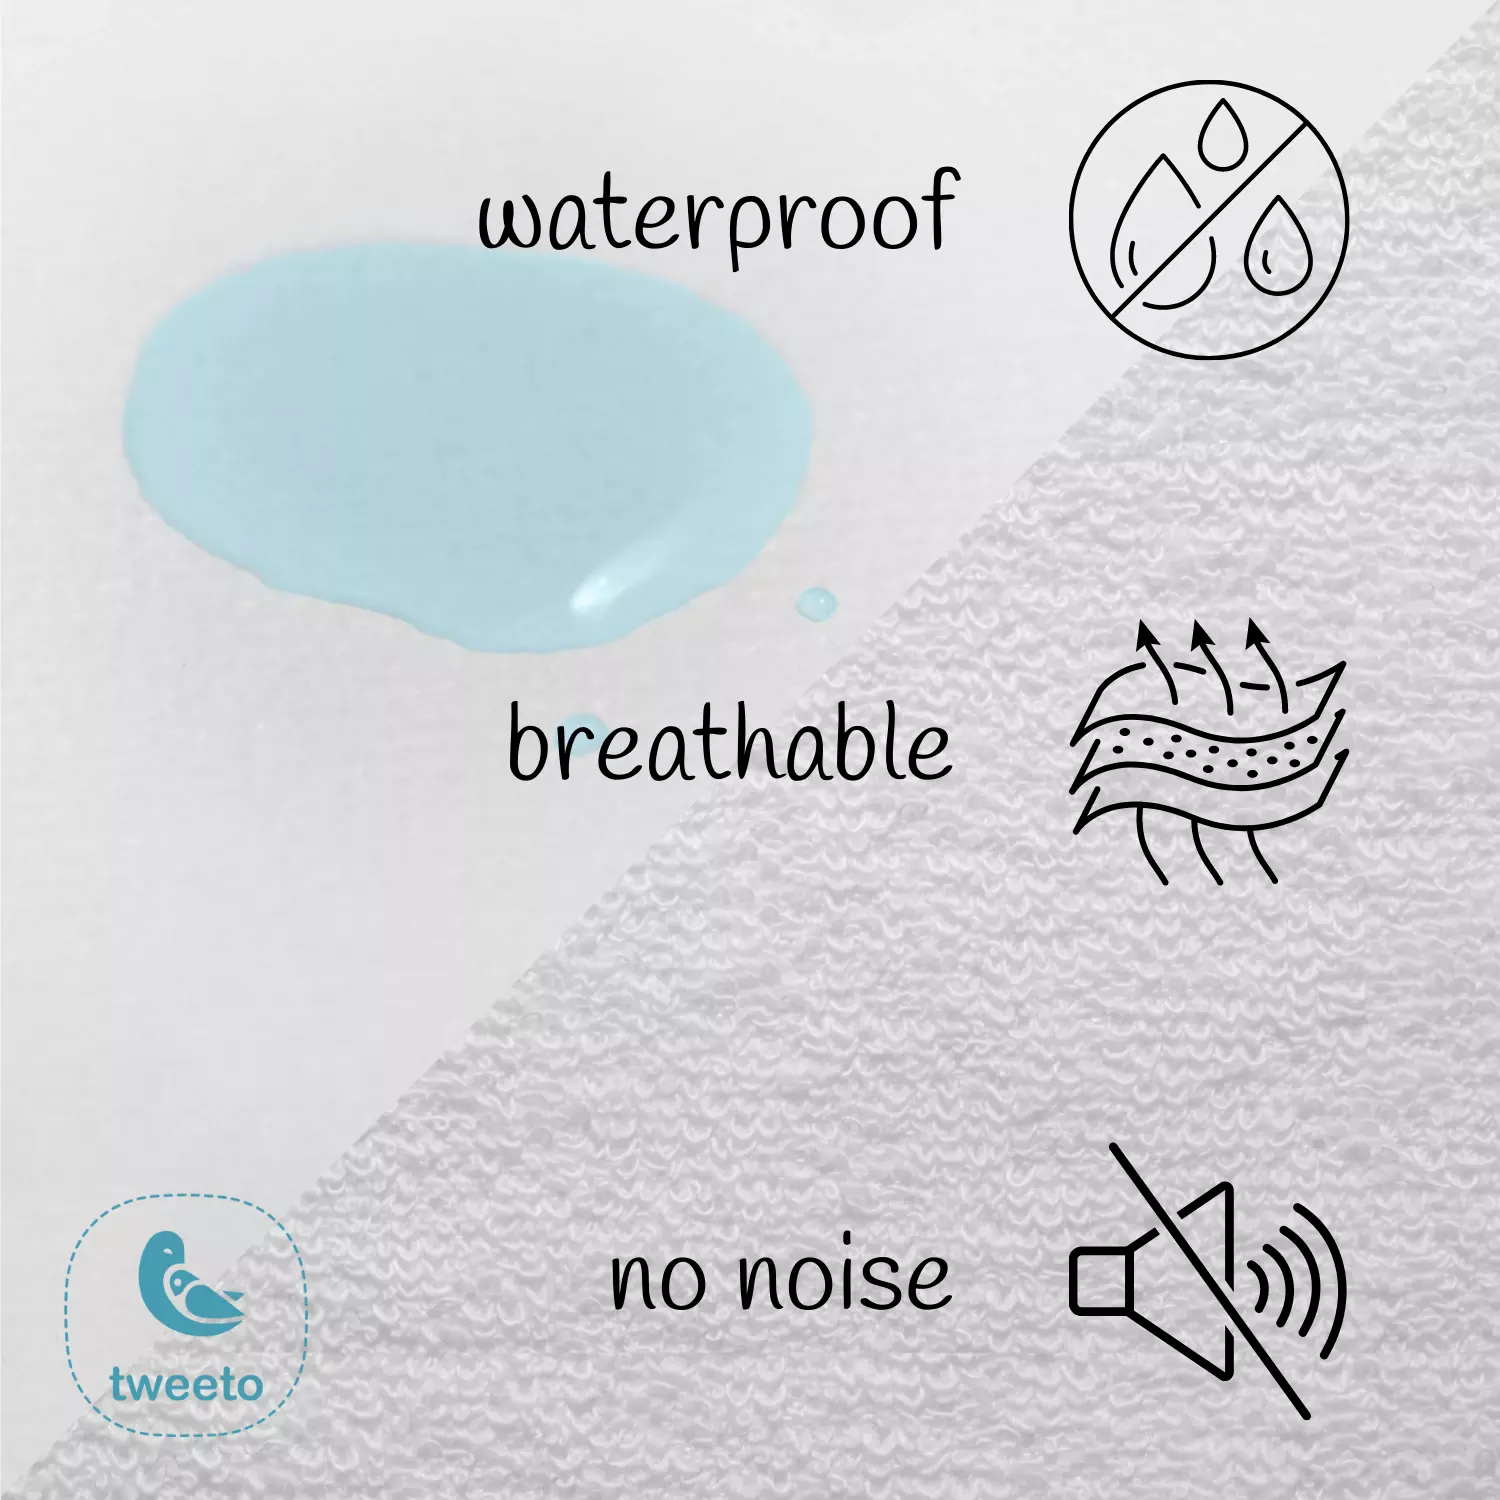 Protezione per materasso - protezione dall'umidità - MINI - 70x70